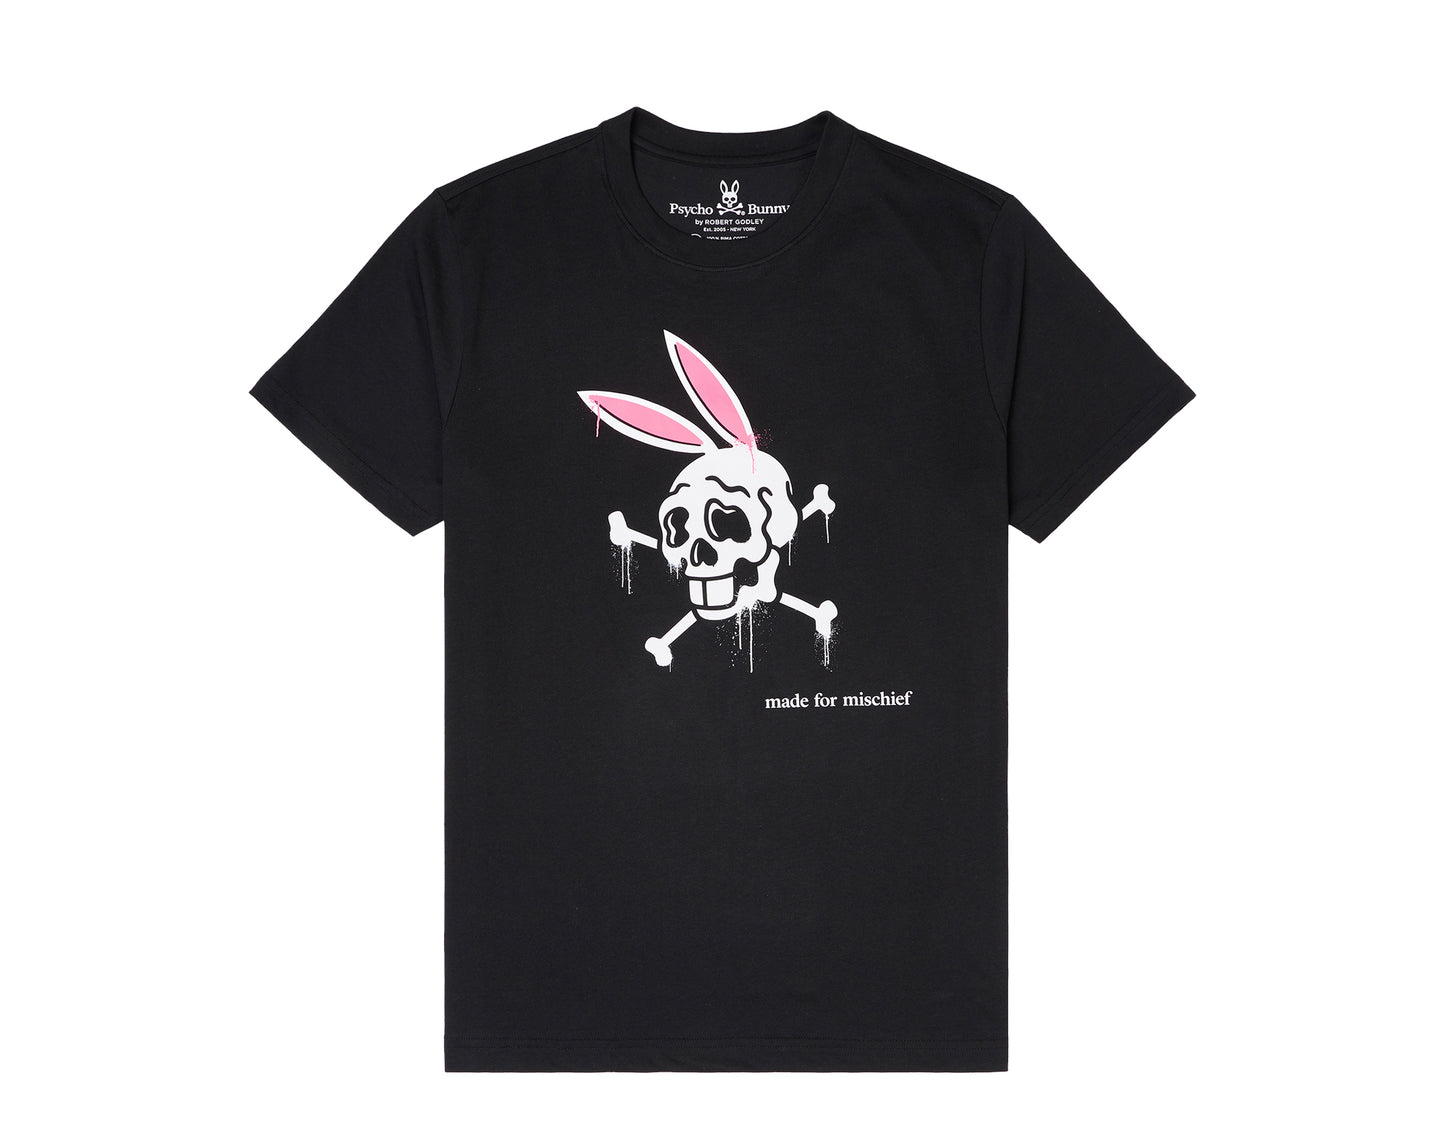 Psycho Bunny Gorton Skull Graphic Seaport Black Men's Tee Shirt B6U368F1PC-BLK